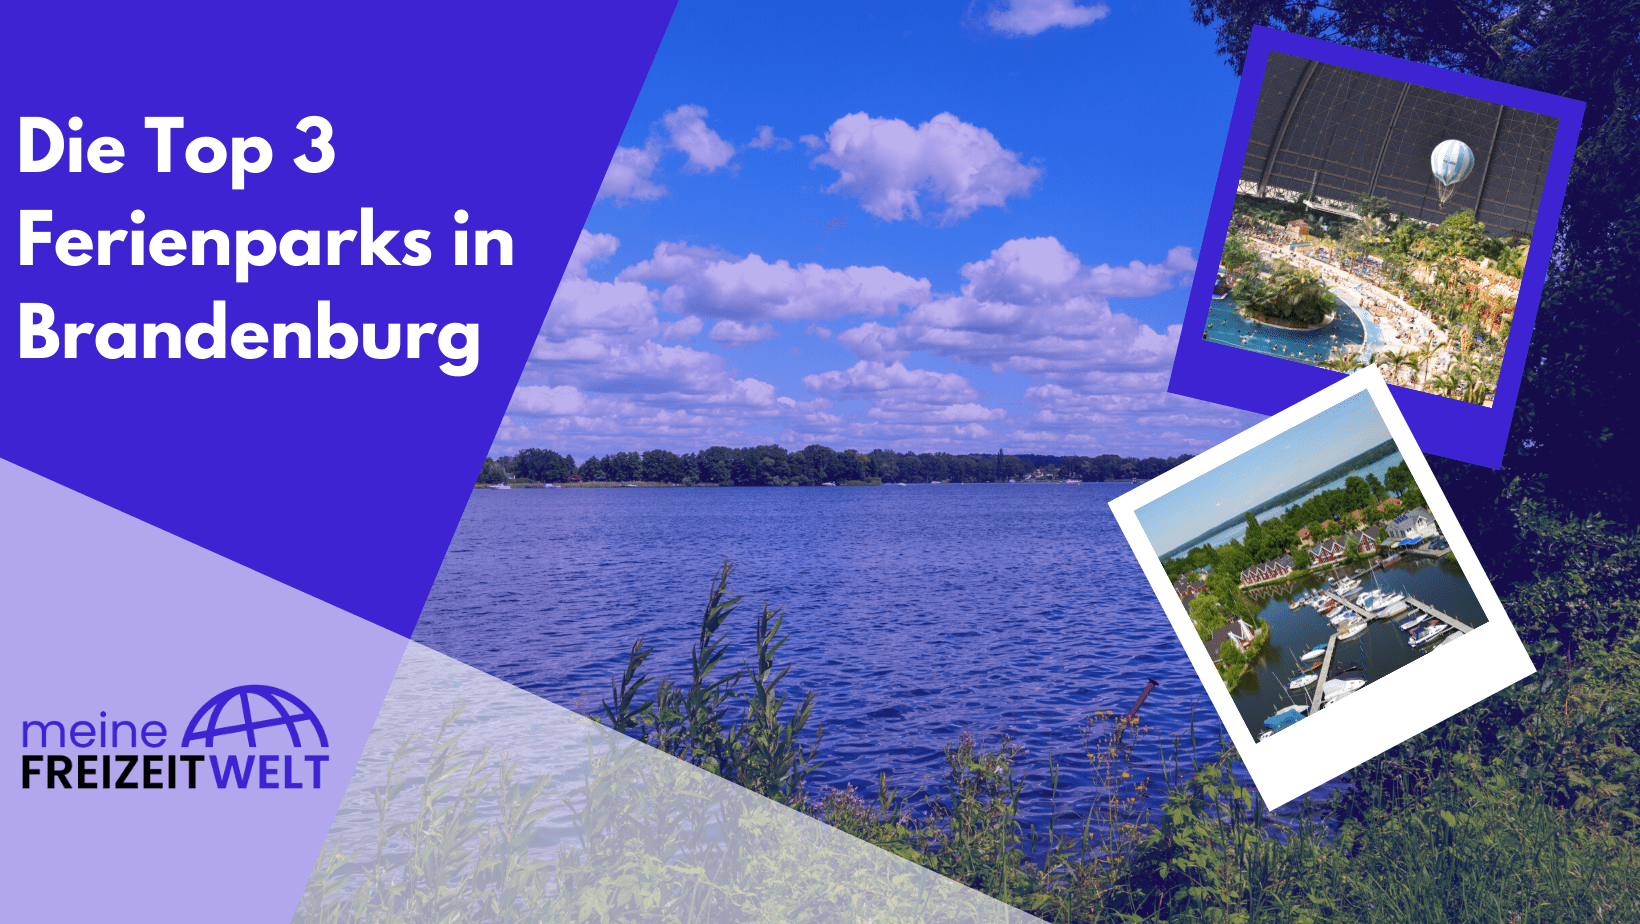 Die Top 3 Ferienparks in Brandenburg